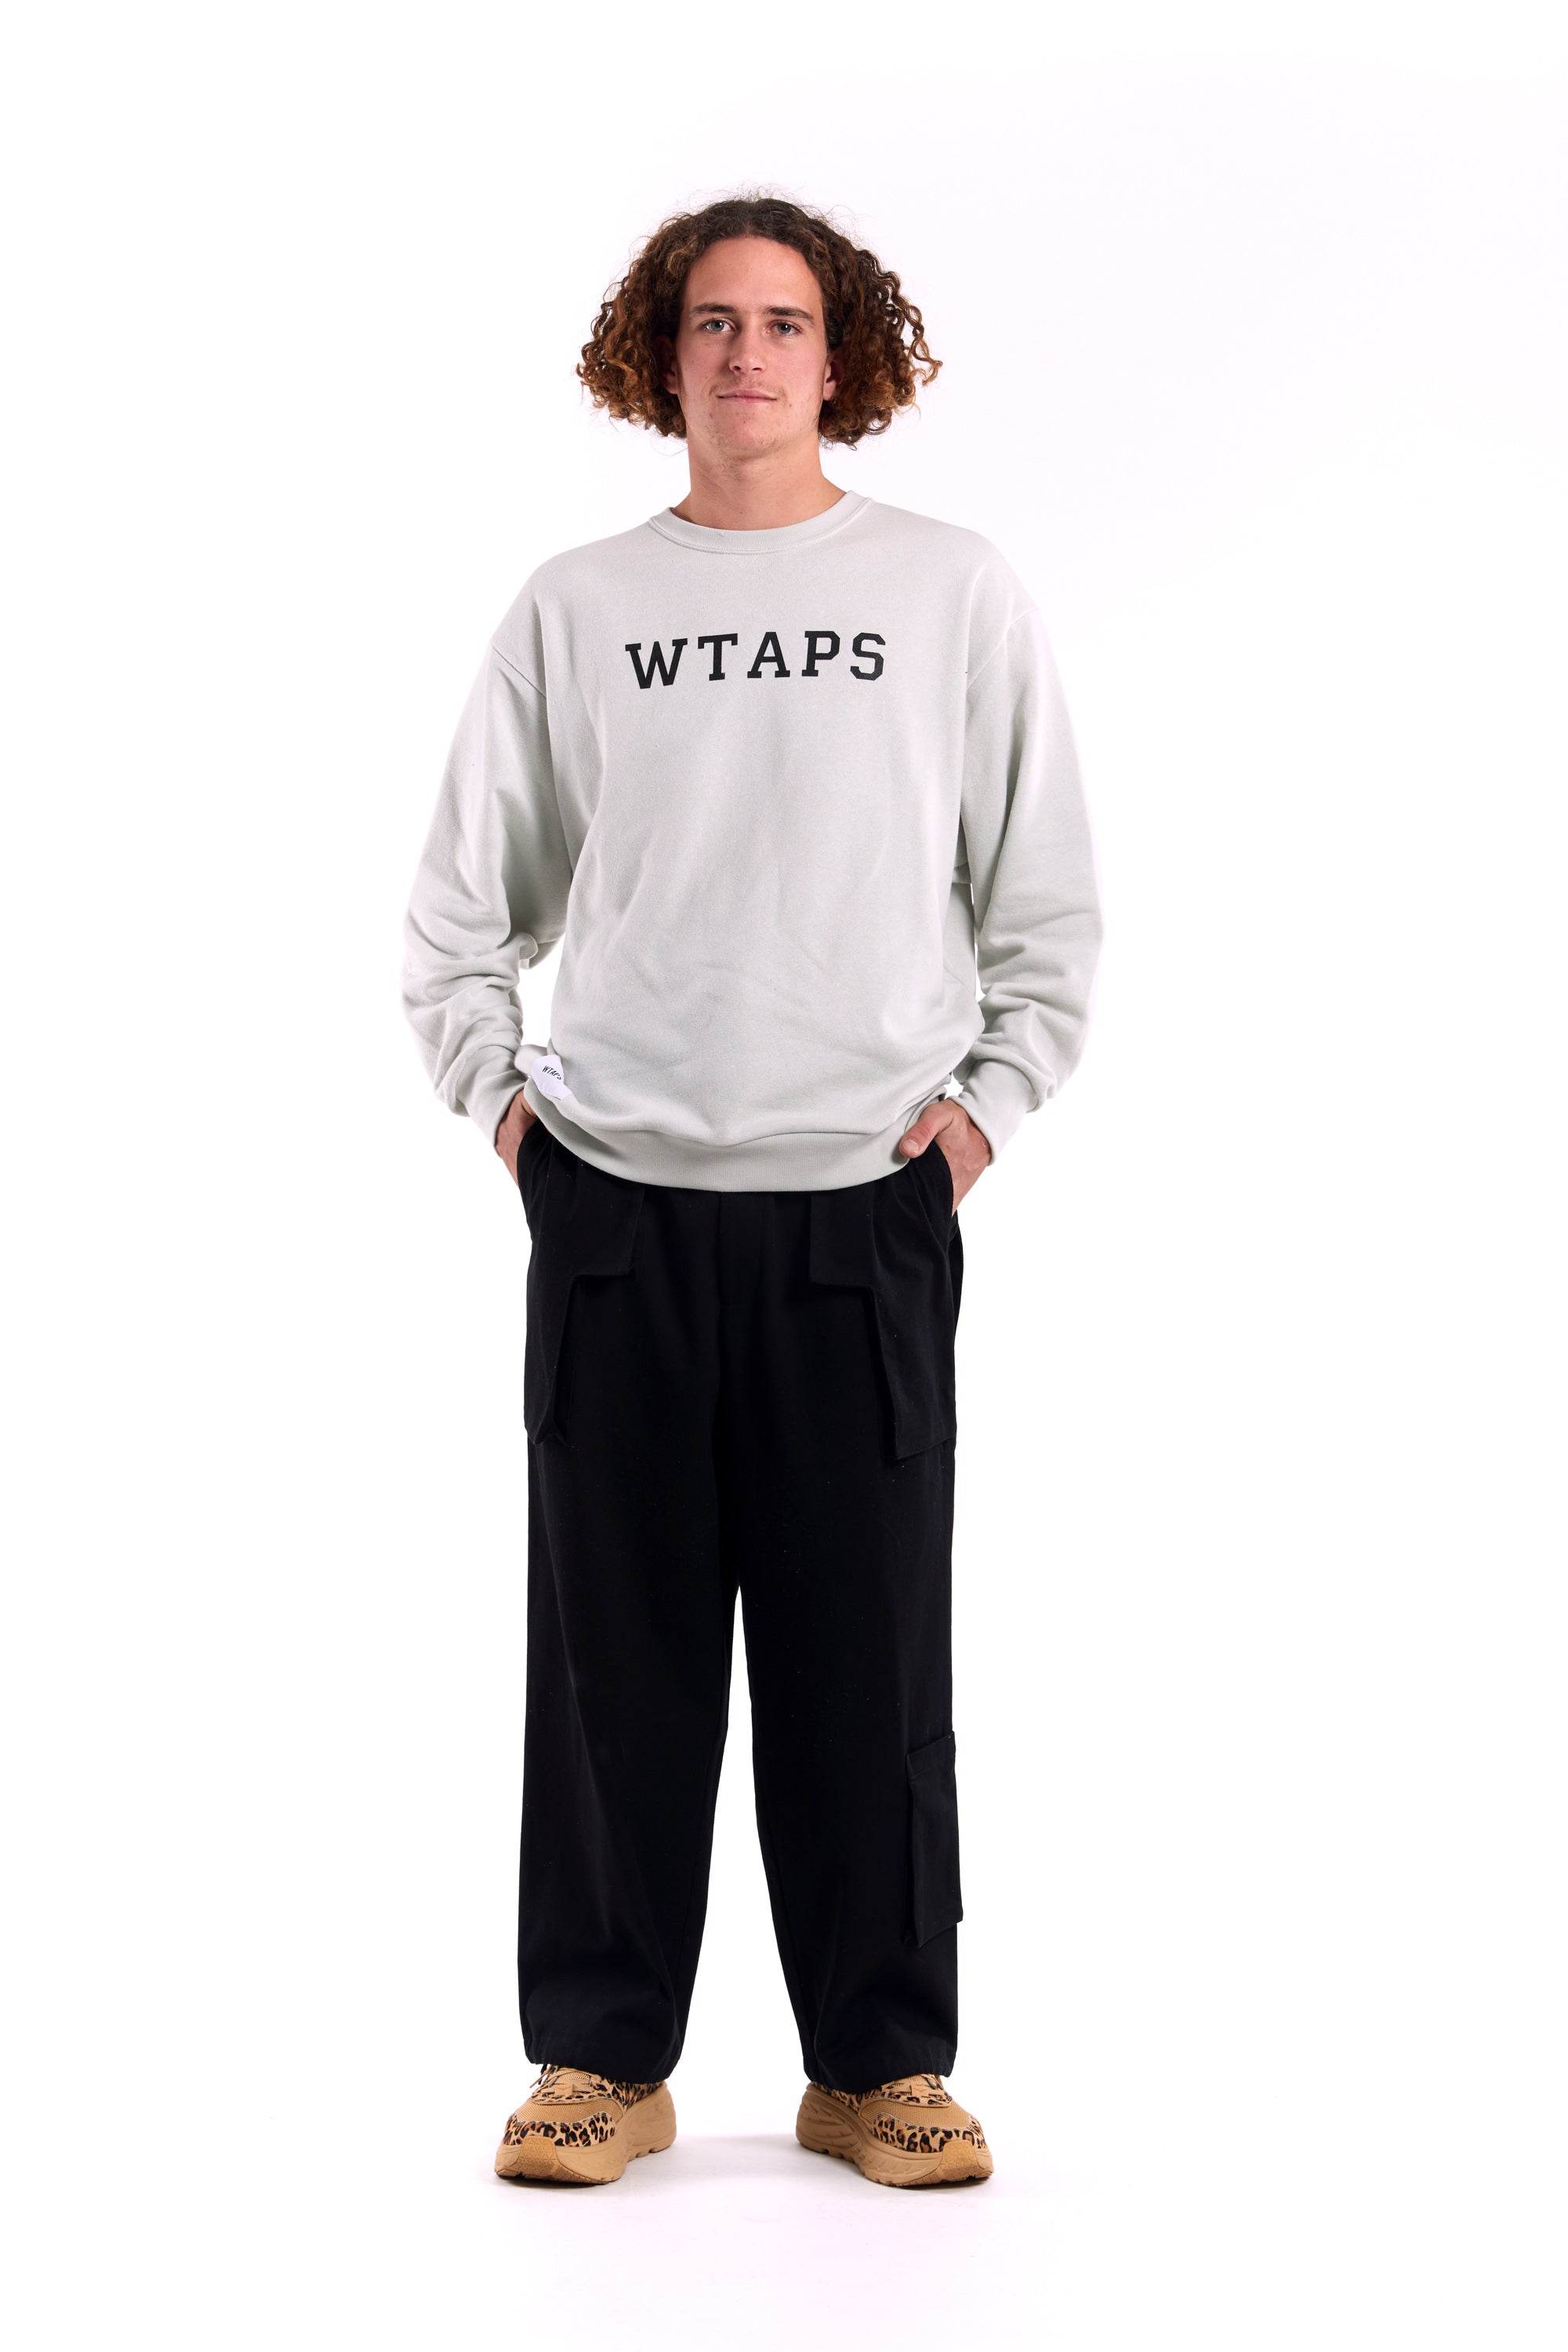 wtaps All 02 SWEATER COTTON - ニット/セーター